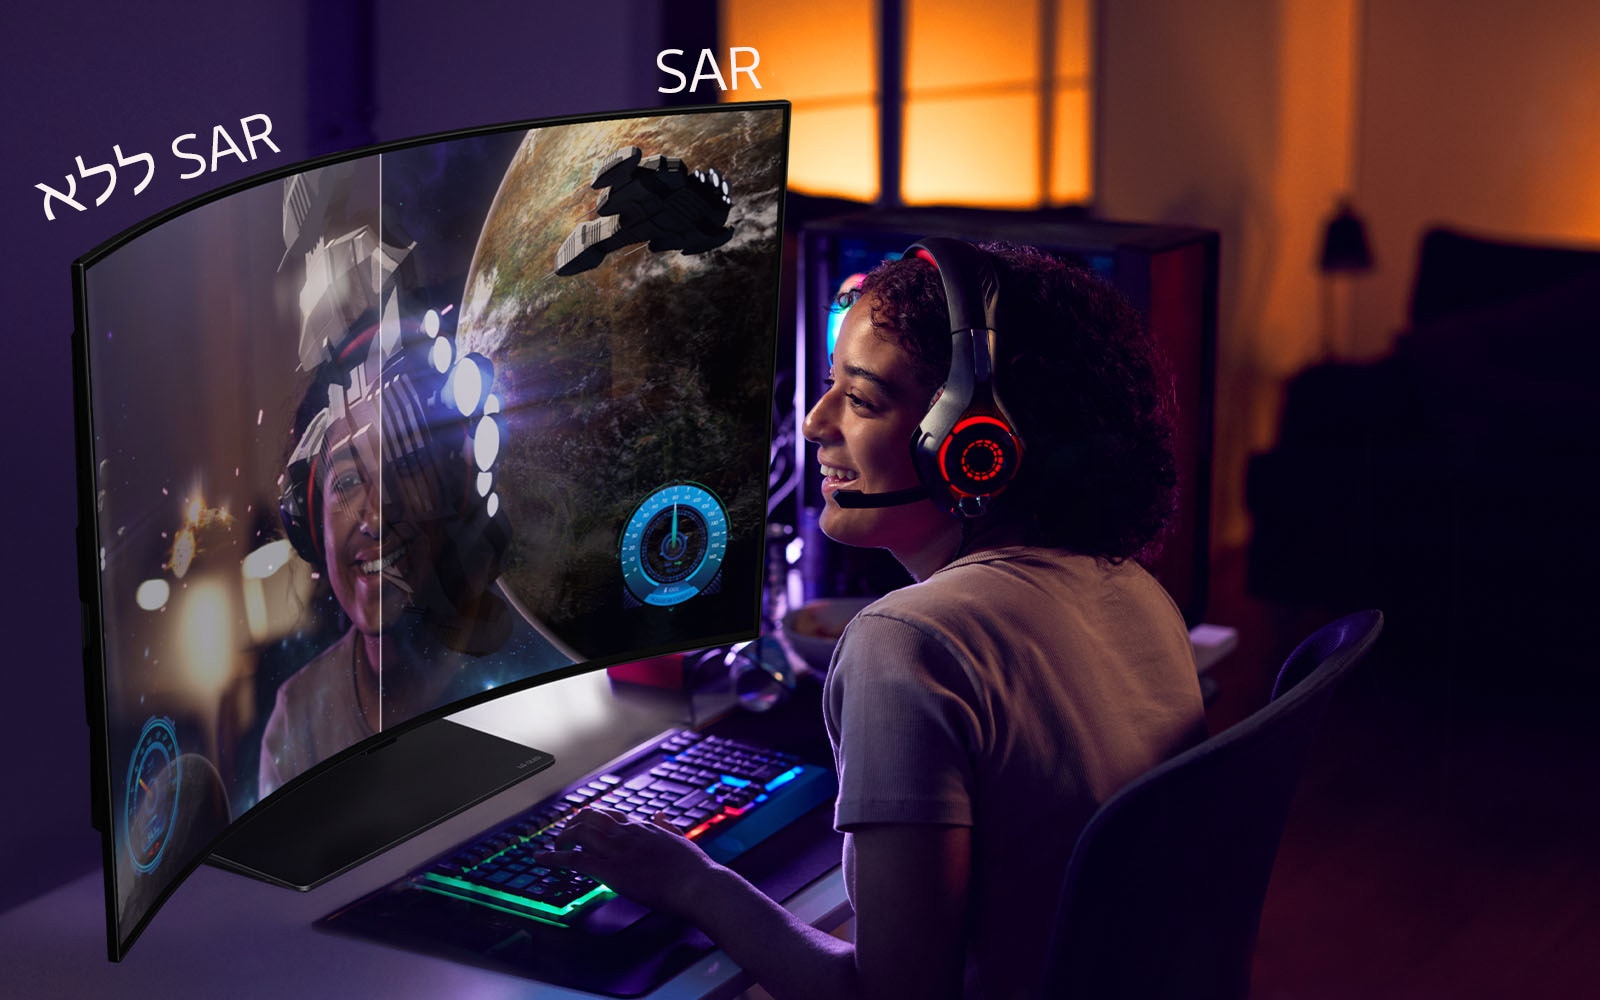 תמונה של אישה המשחקת משחק ב-LG OLED Flex. הצד הימני של המסך מציג את טכנולוגיית SAR המוחלת בגרפיקת המשחק. הצד הימני של המסך מציג מסך ללא SAR ואת ההשתקפות של פני הגיימרית.